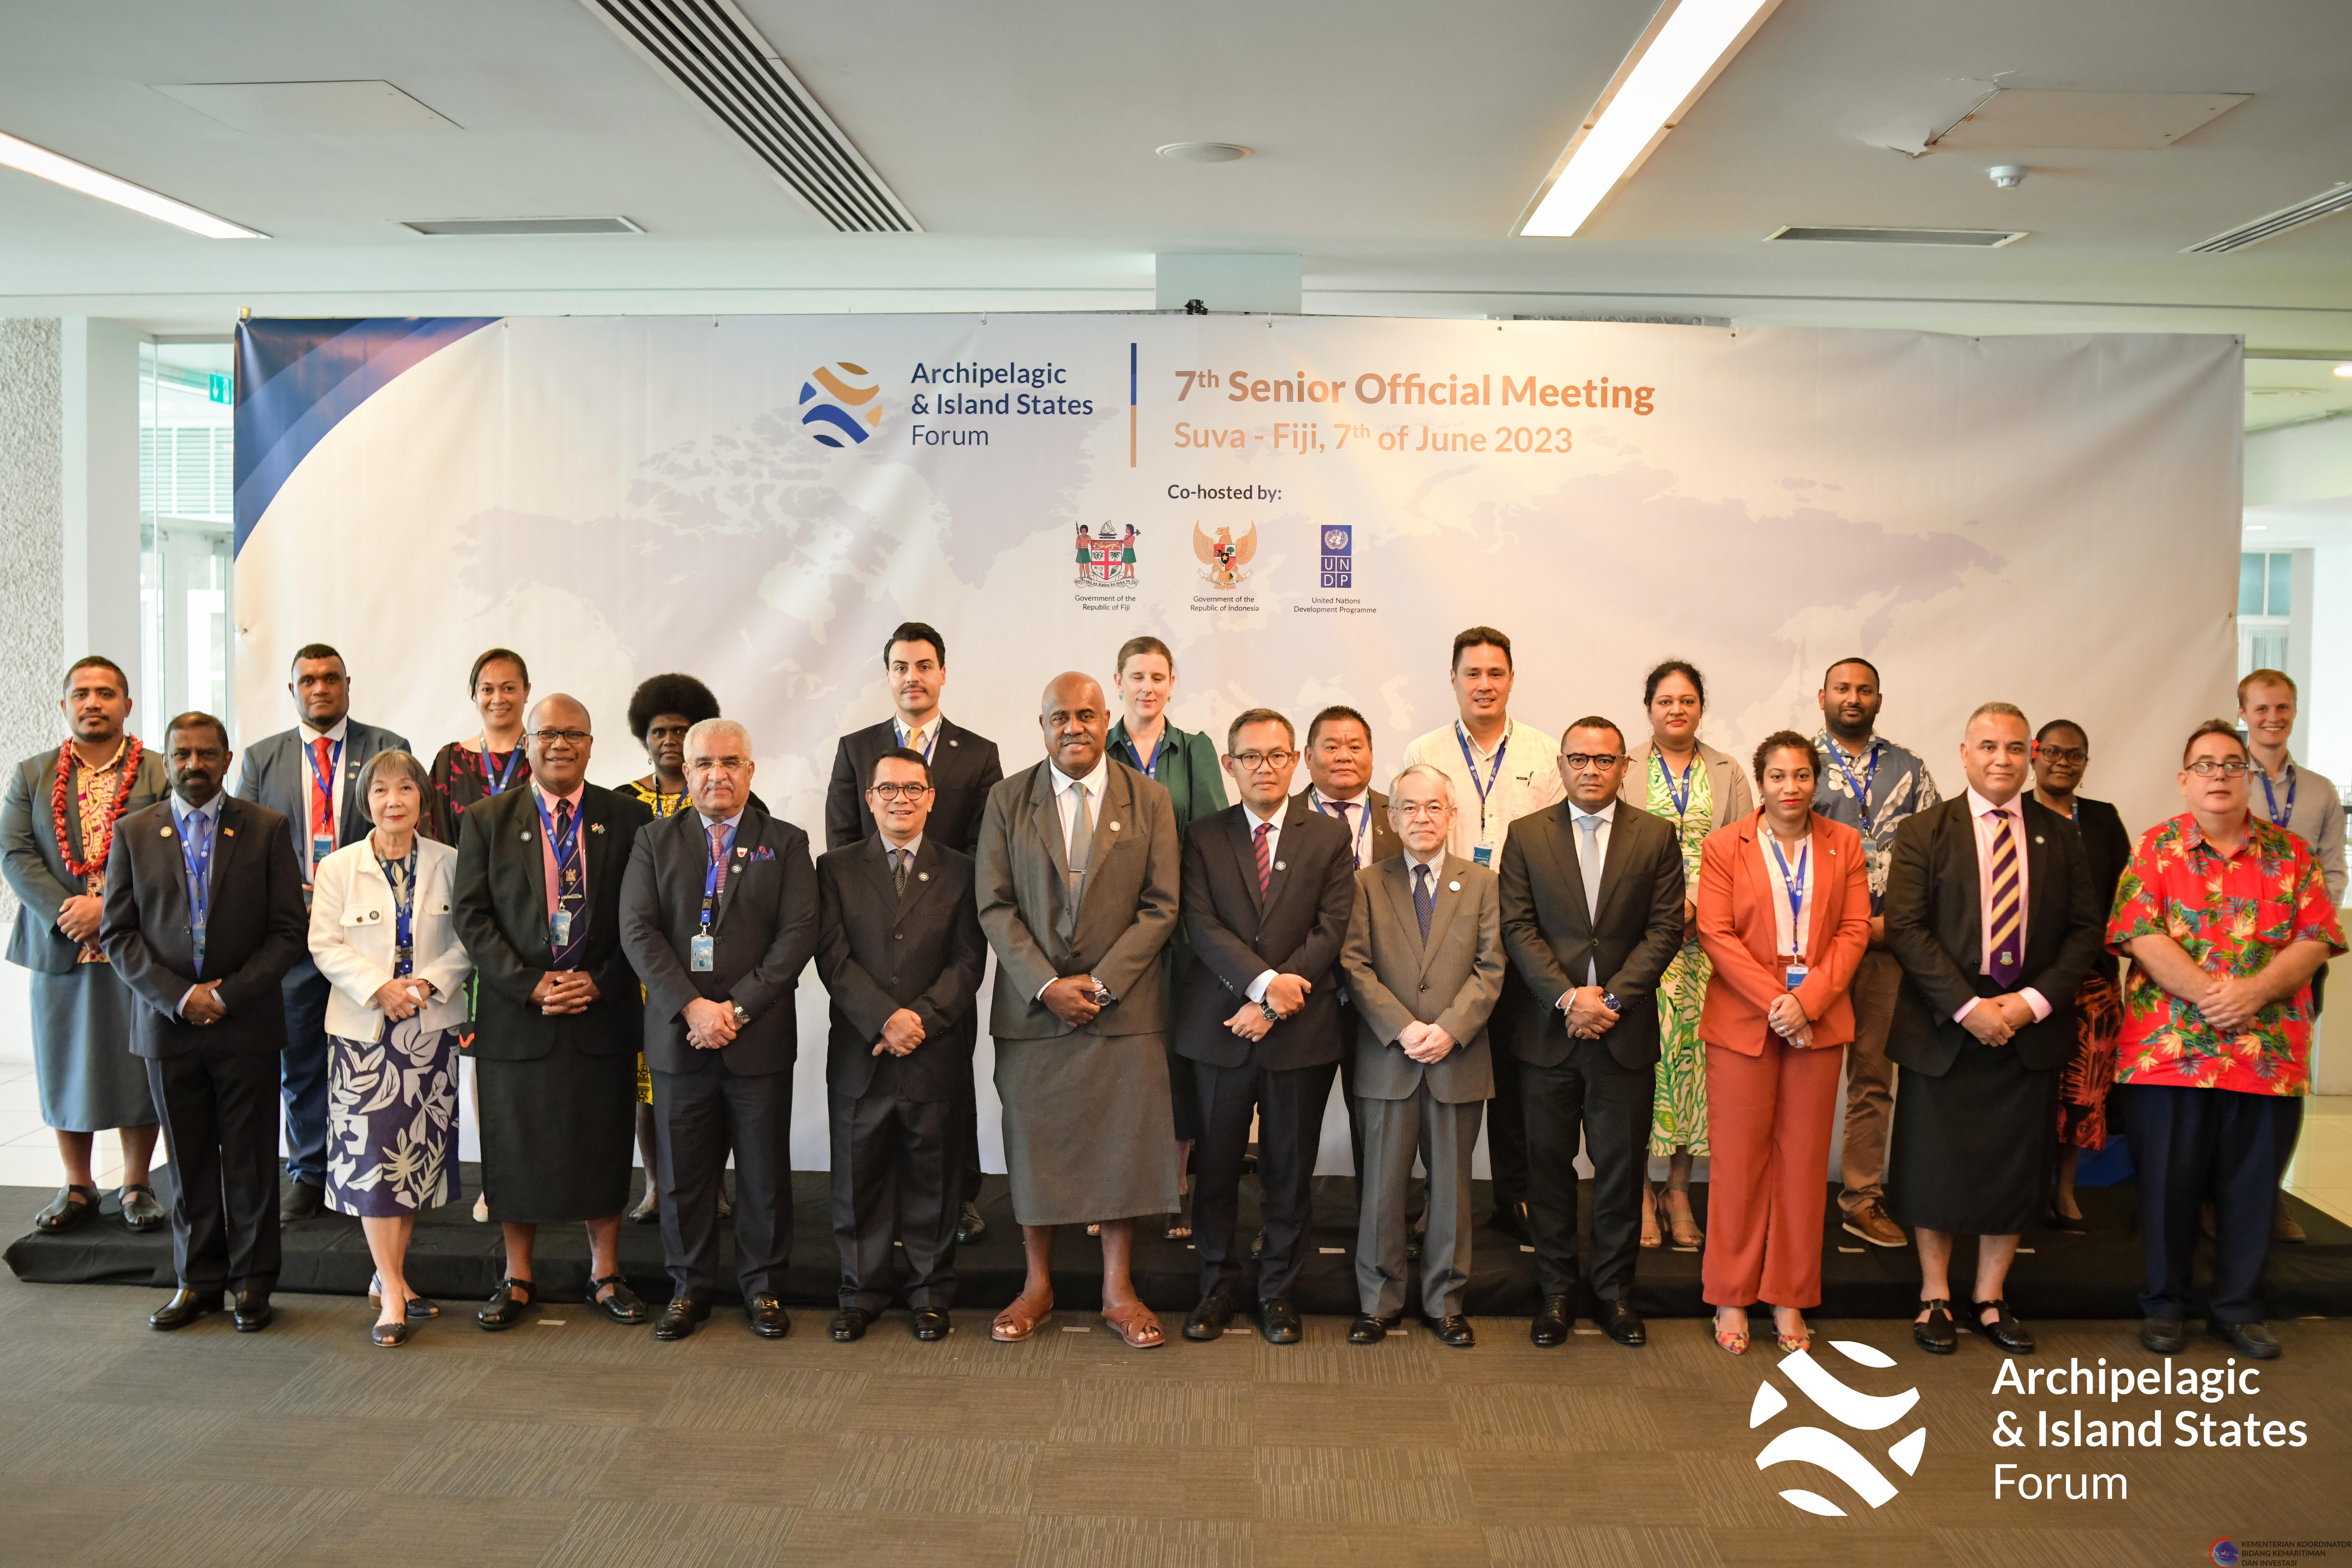 AIS Forum Gelar Pertemuan Pejabat Tinggi ke-7 di Suva, Fiji, Serukan  Penguatan Kolaborasi Antar Negara-Negara Pulau dan Kepulauan melalui Inovasi dan Ekonomi Biru